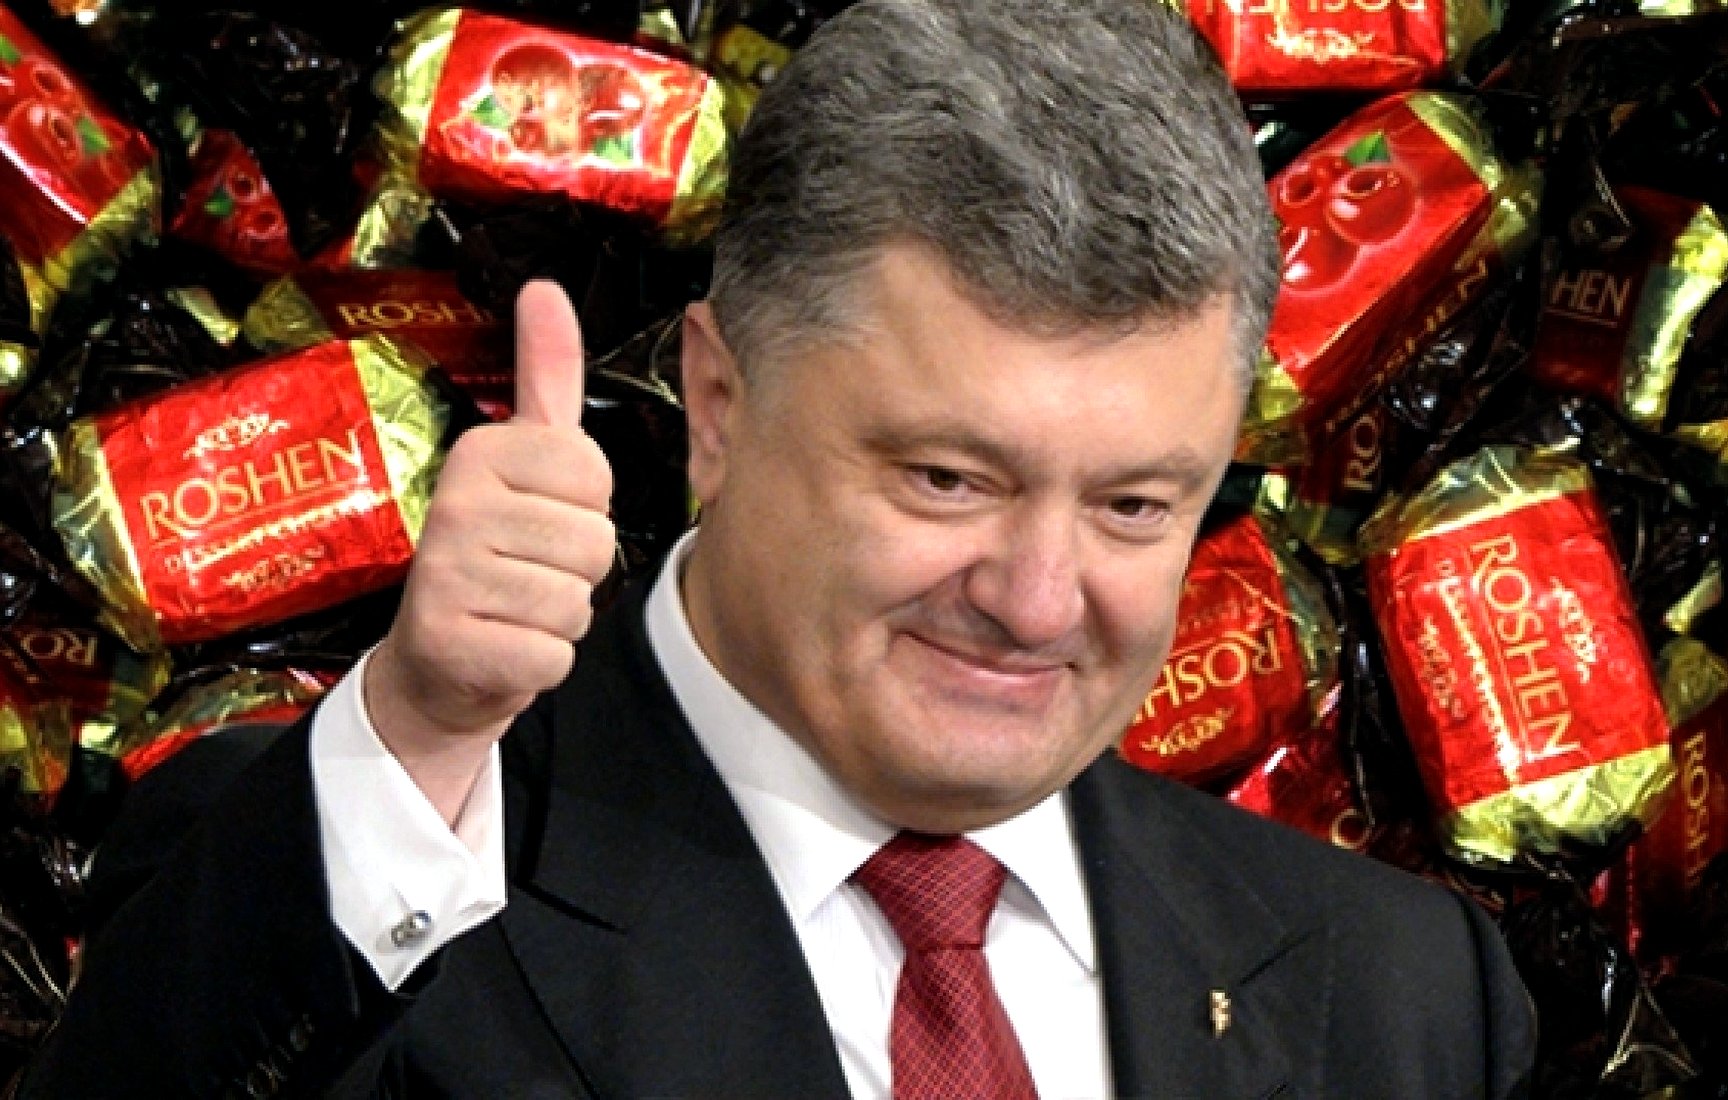 Диане Панченко нельзя, а Рошену можно: Шевченко обнаружил в РБ шоколадки фабрики Порошенко